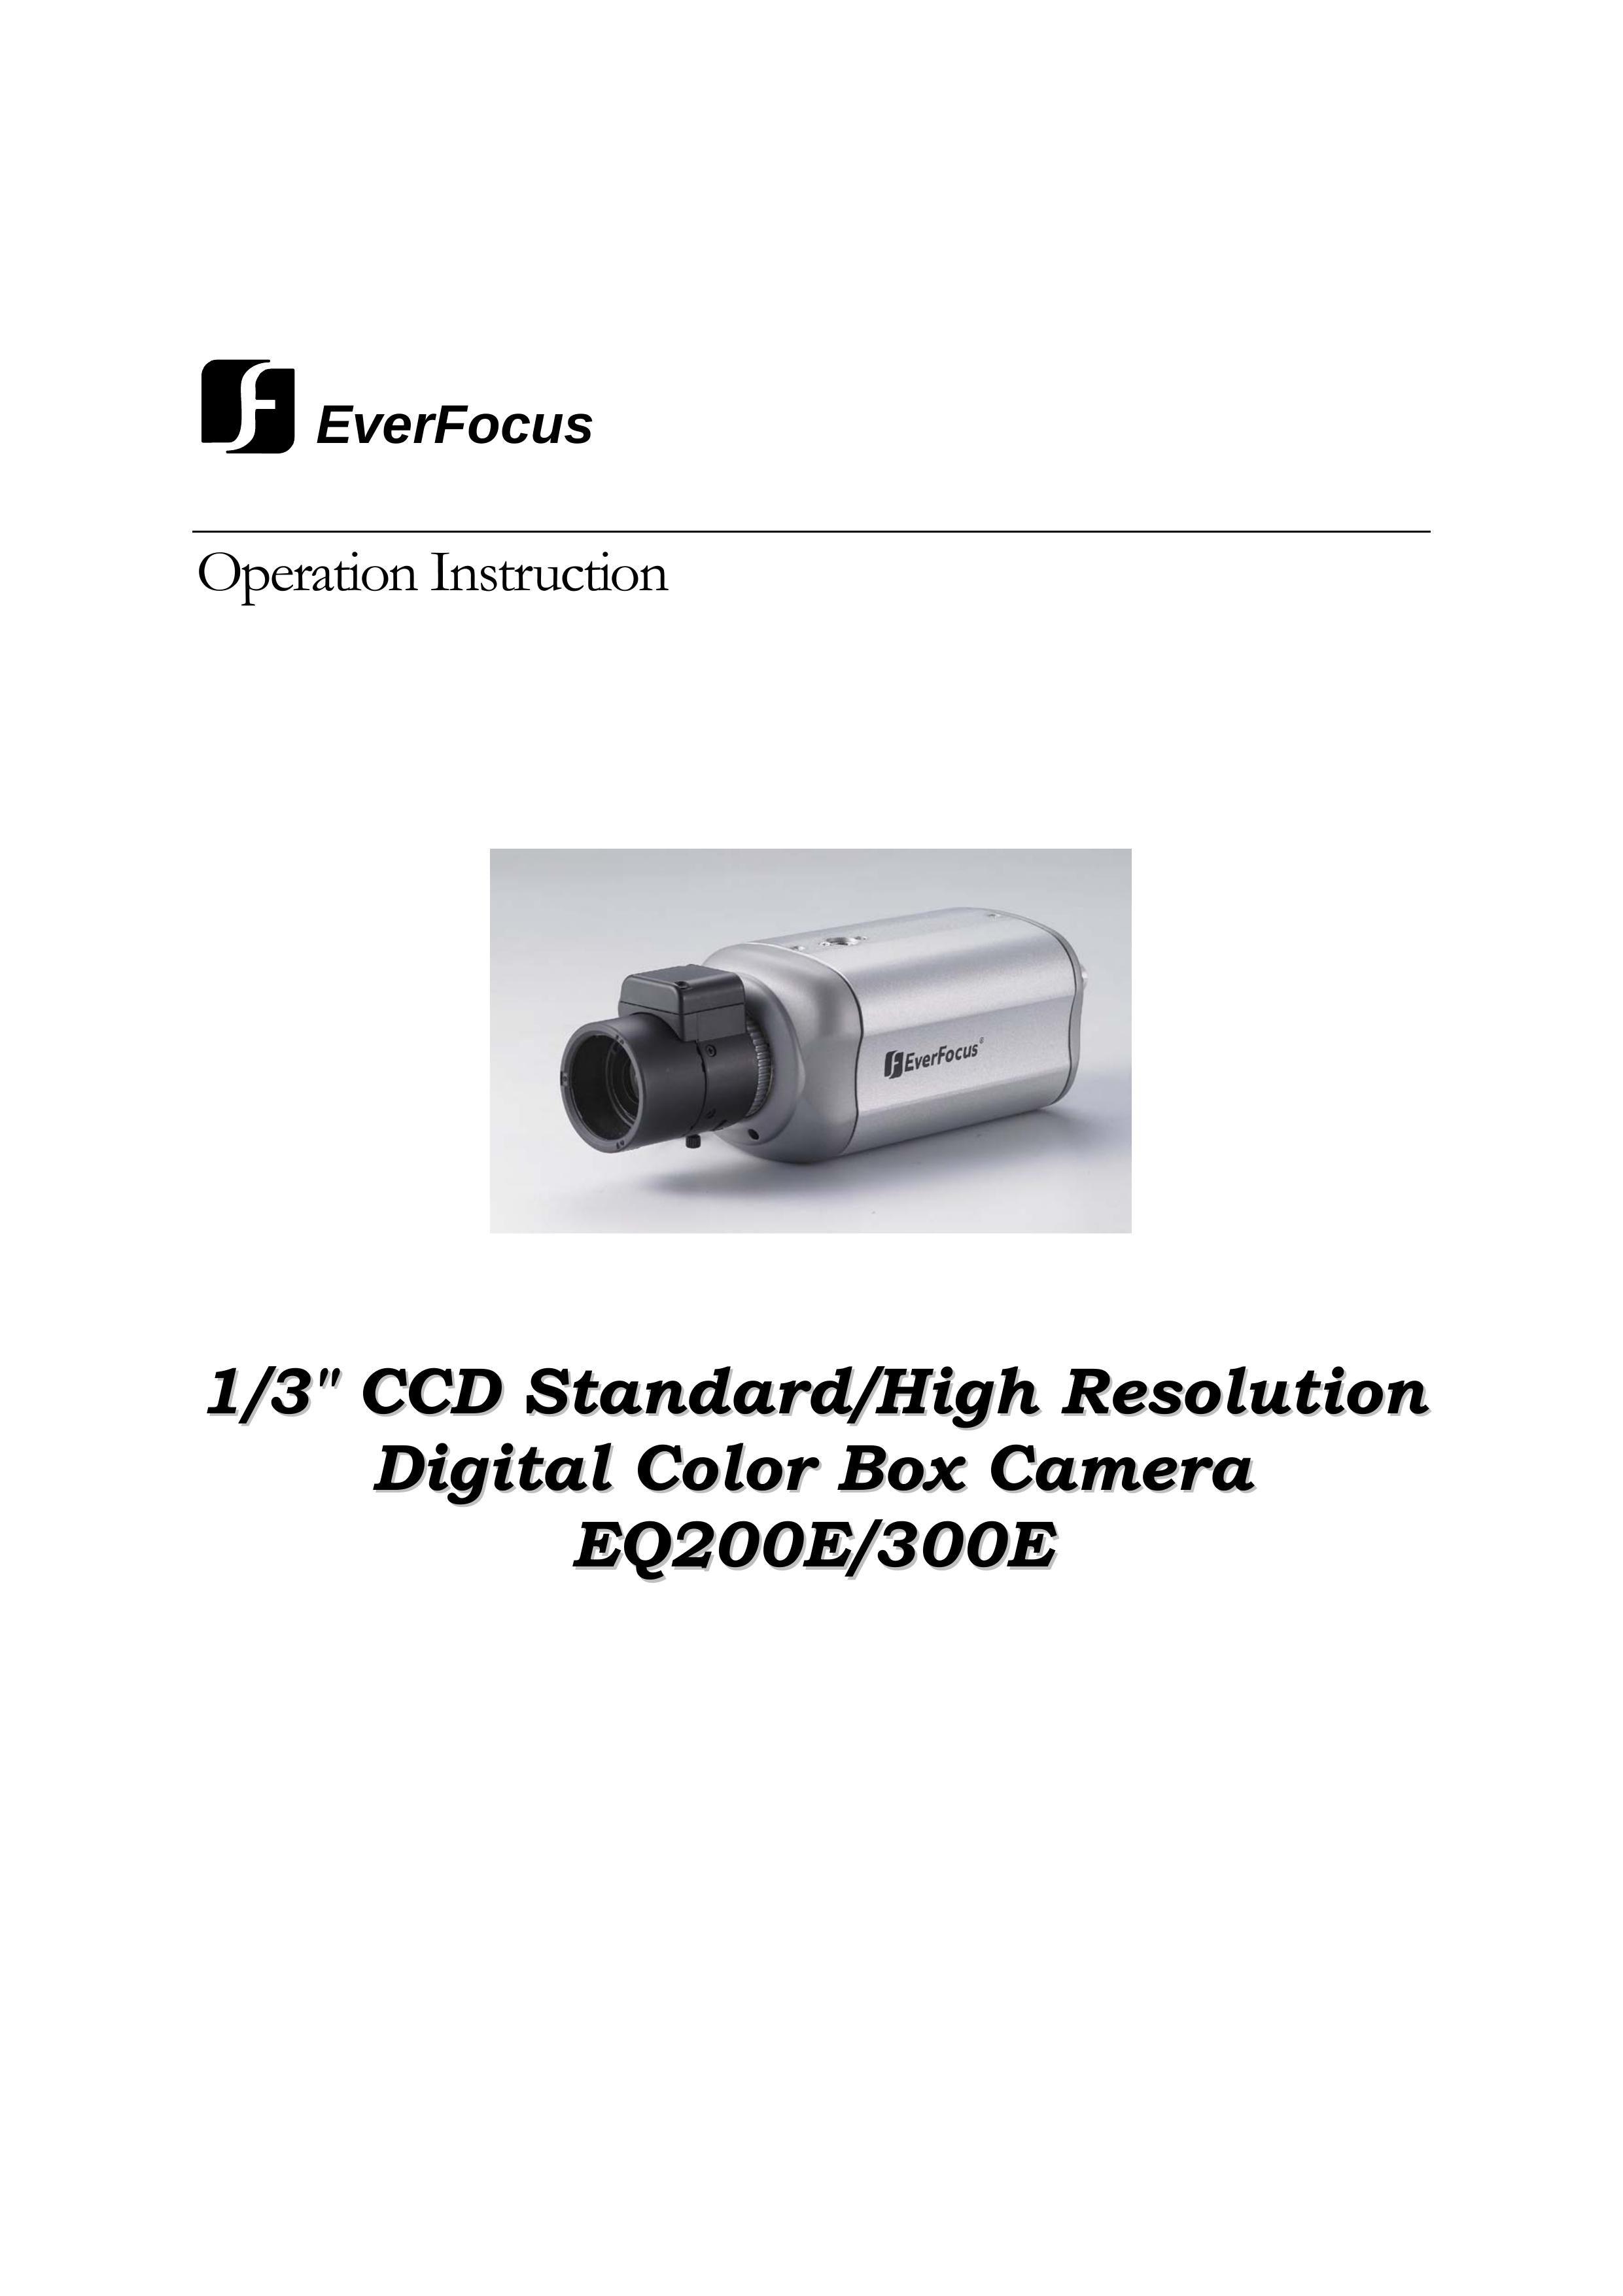 EverFocus EQ200E Digital Camera User Manual